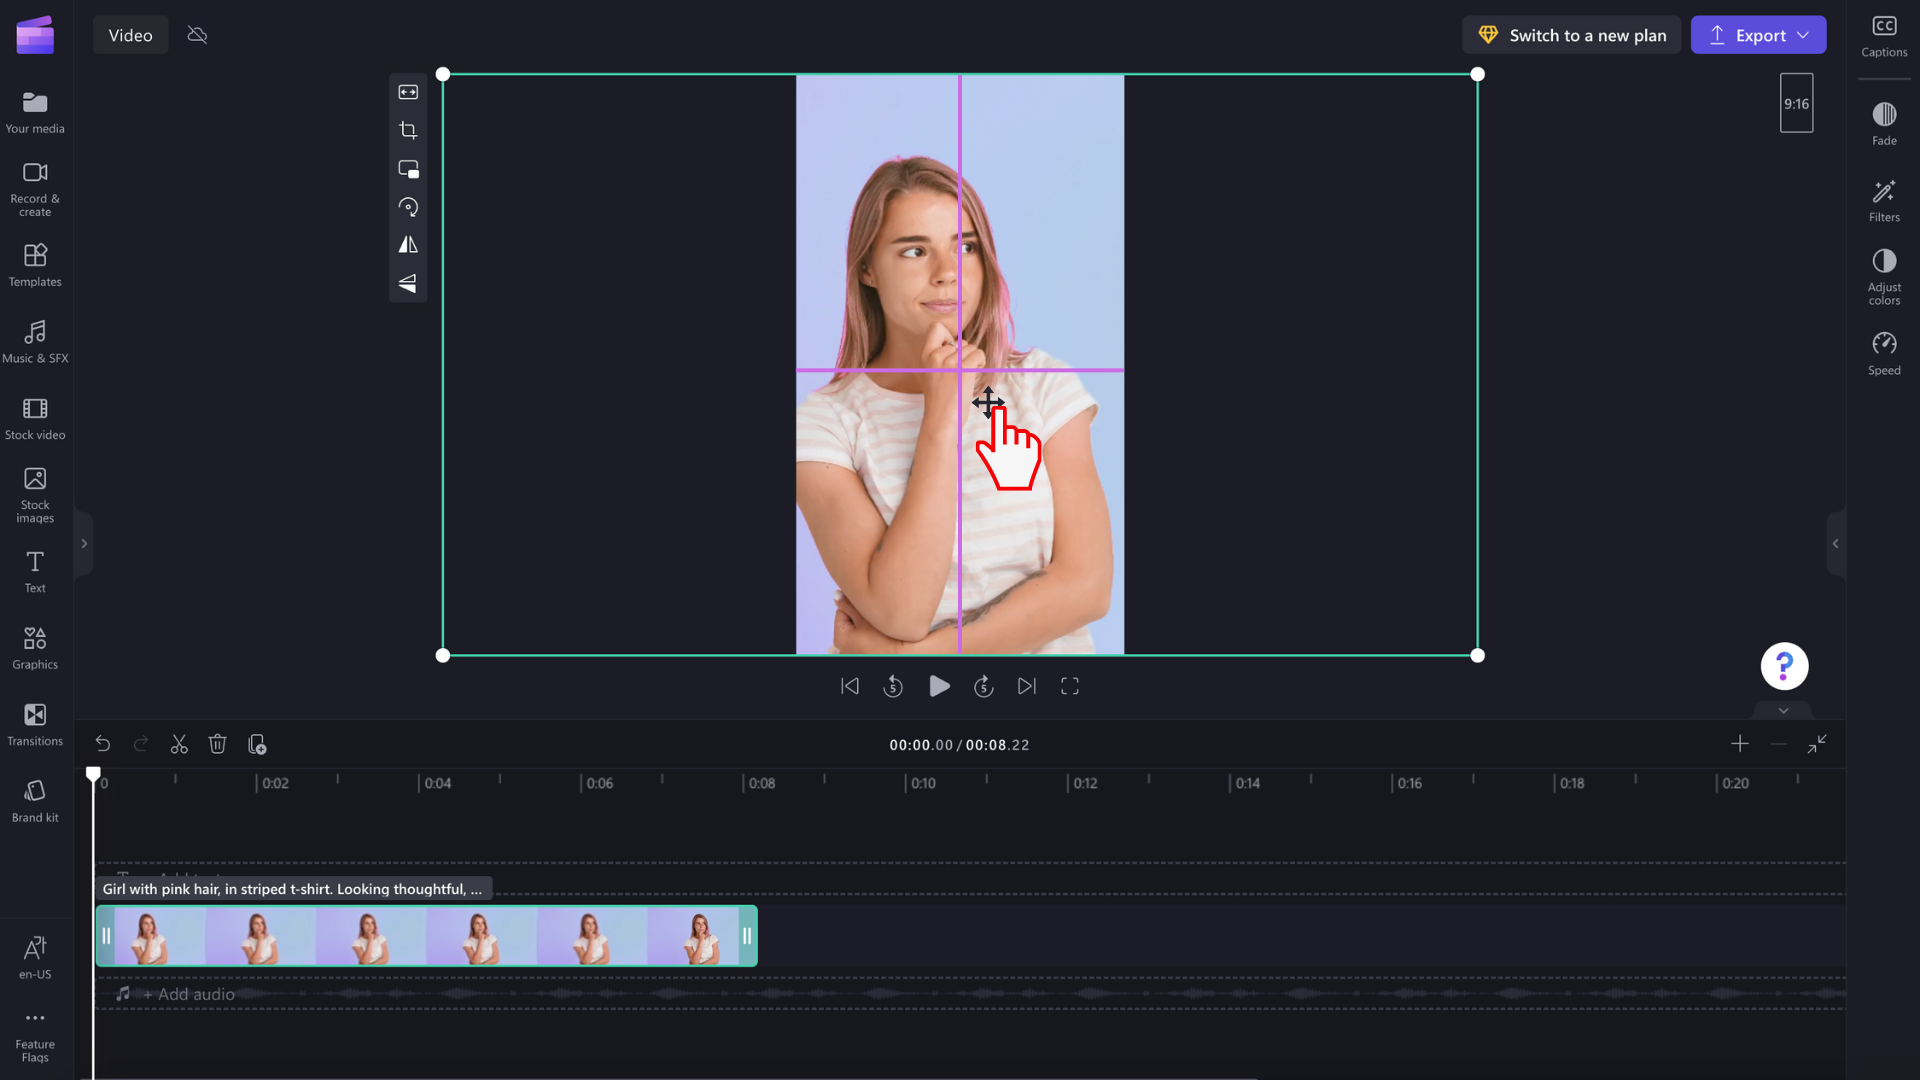 תמונה של משתמש הממקם מחדש את התצוגה המקדימה של הווידאו עם מילוי.